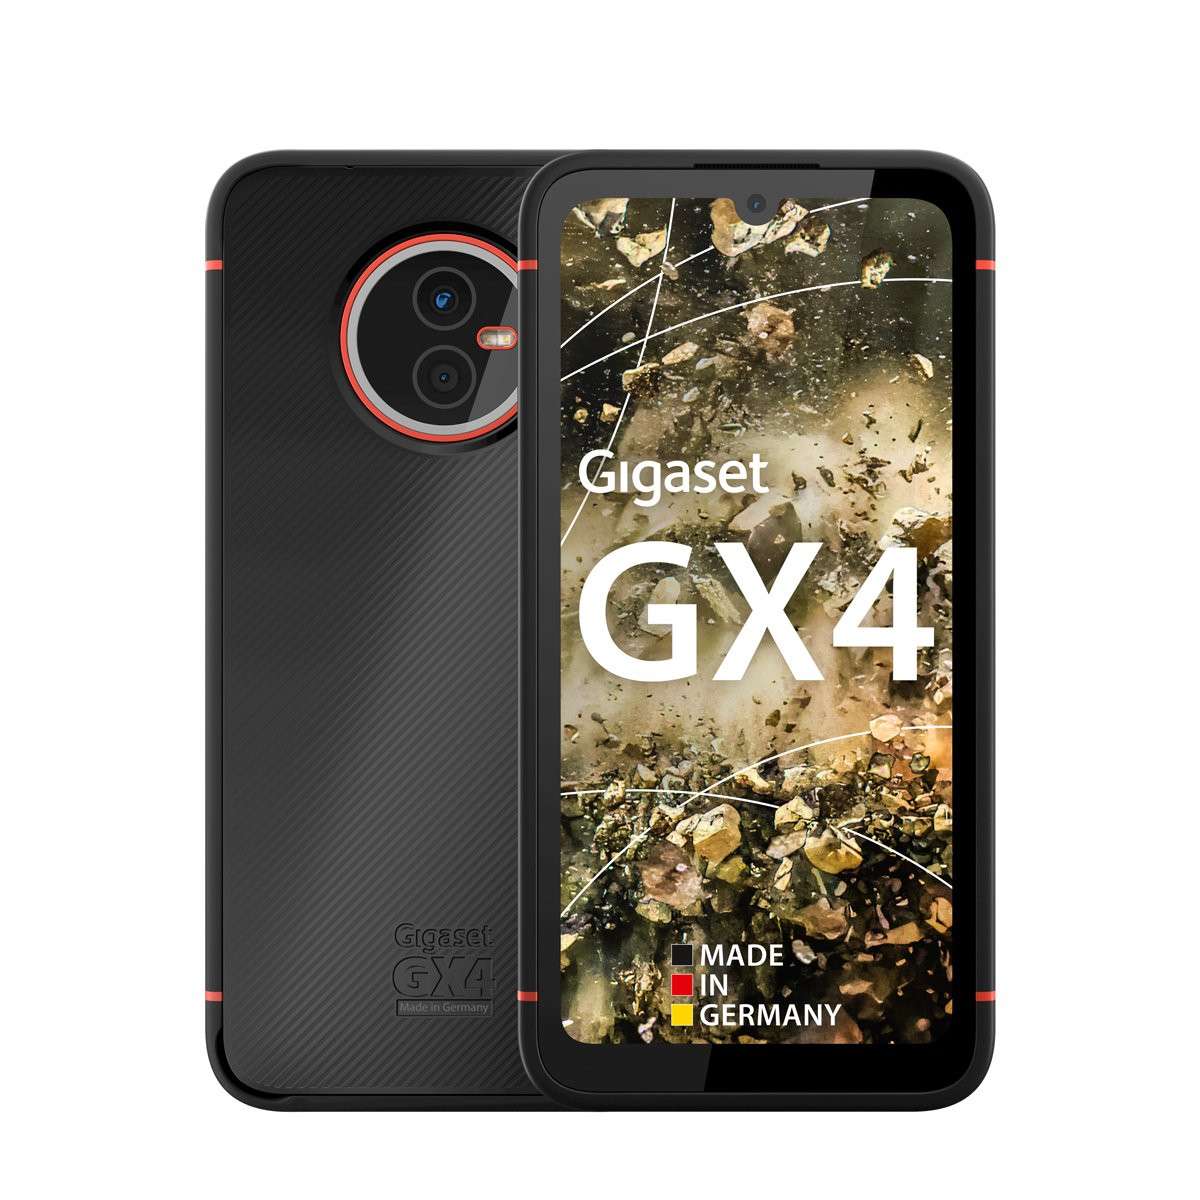 Gigaset GX4 Outdoor Handy black